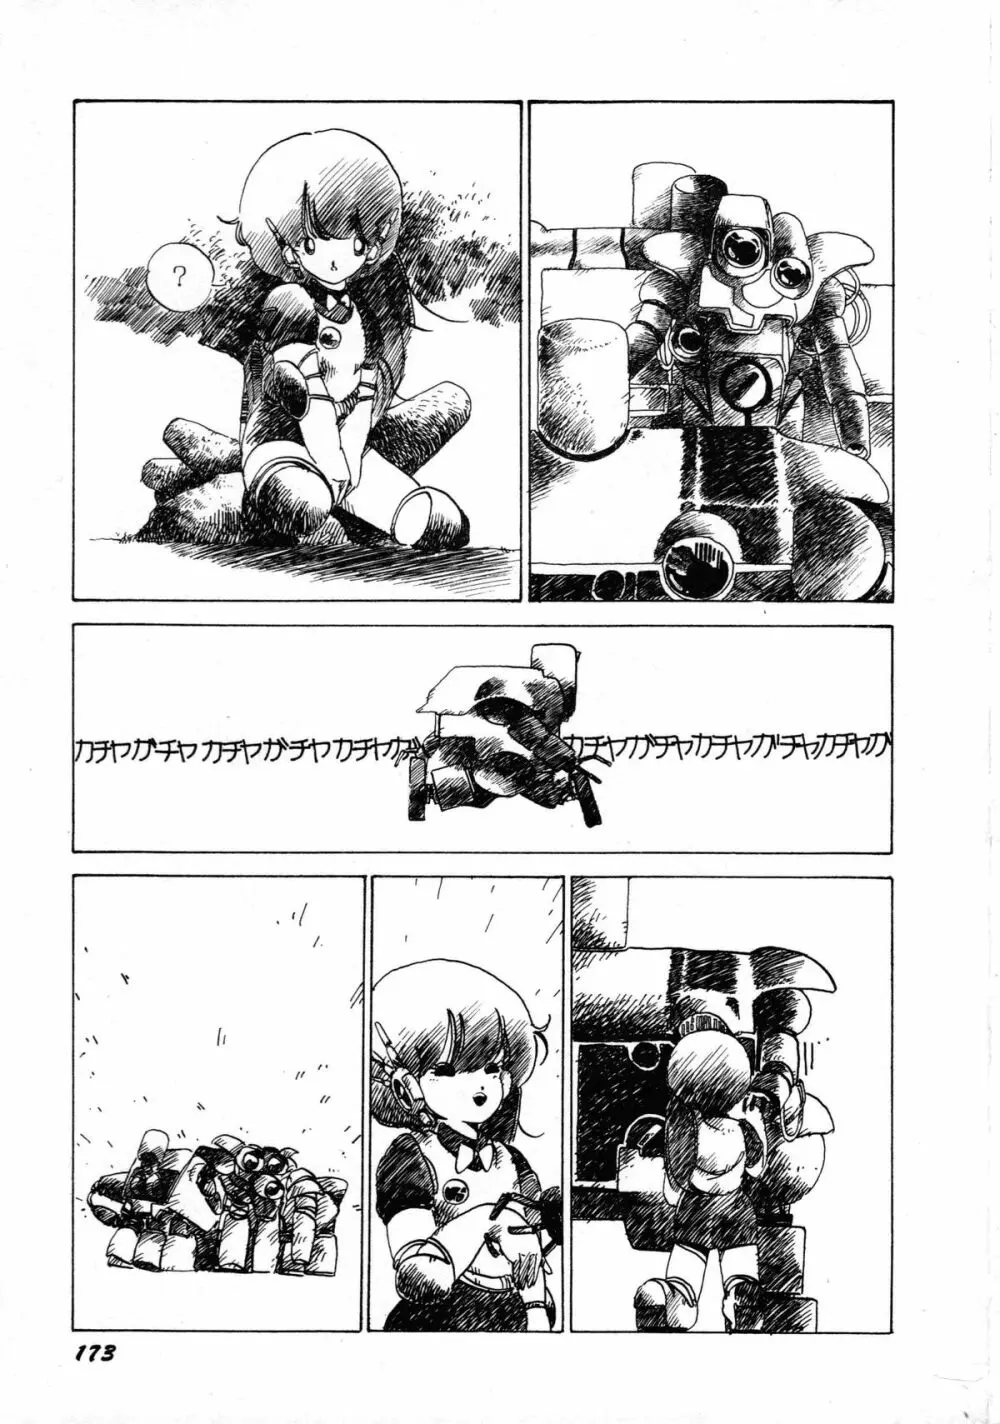 ロボット&美少女傑作選 レモン・ピープル1982-1986 177ページ